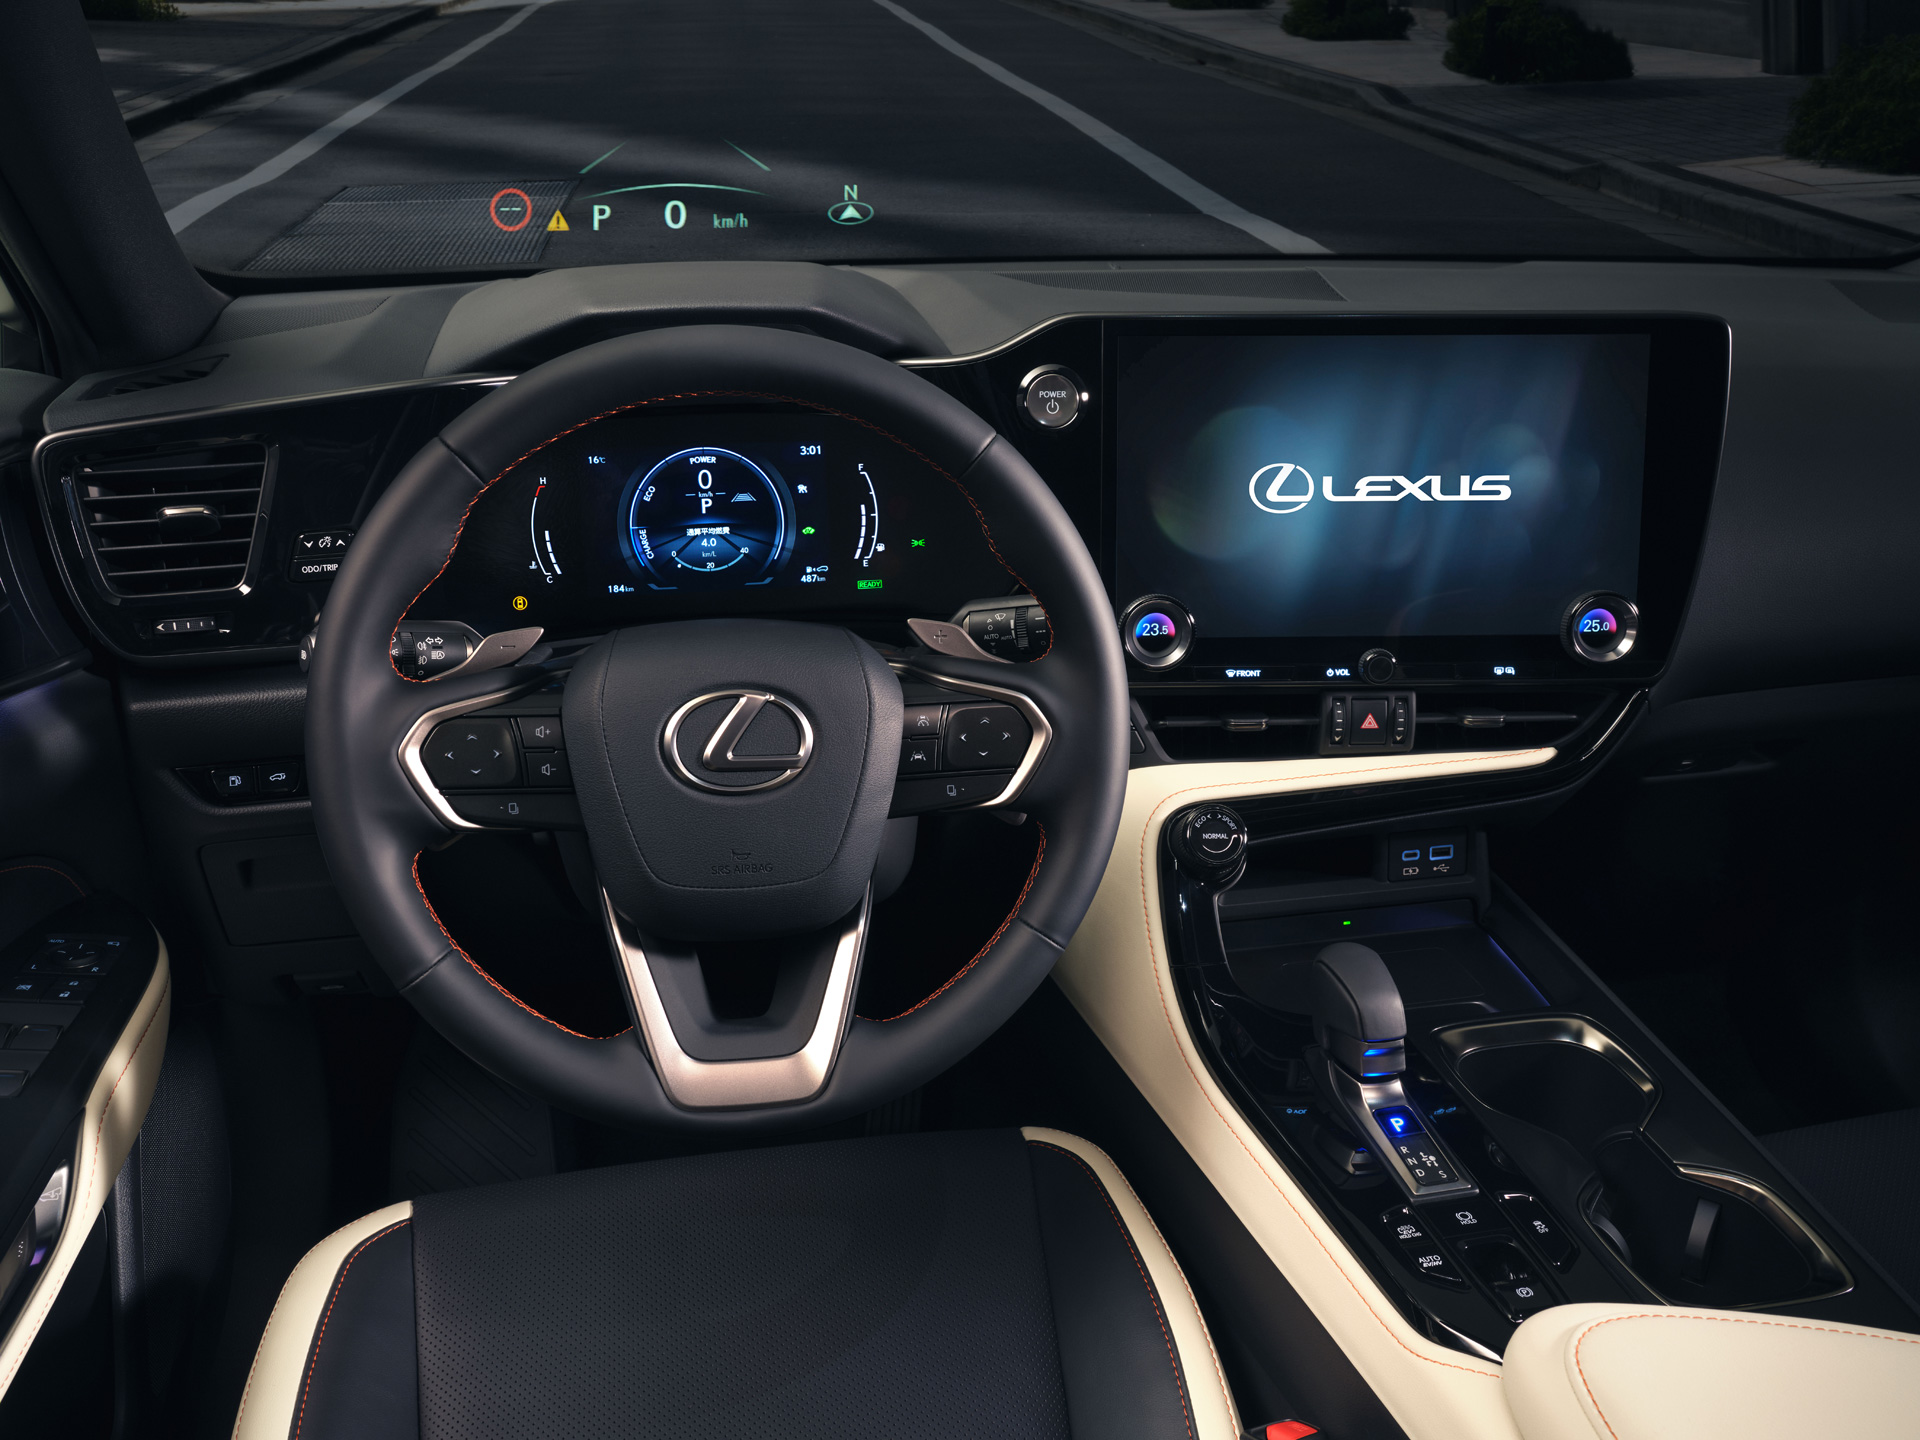 Lexus 新型 Nx を世界初公開 レクサス グローバルニュースルーム トヨタ自動車株式会社 公式企業サイト